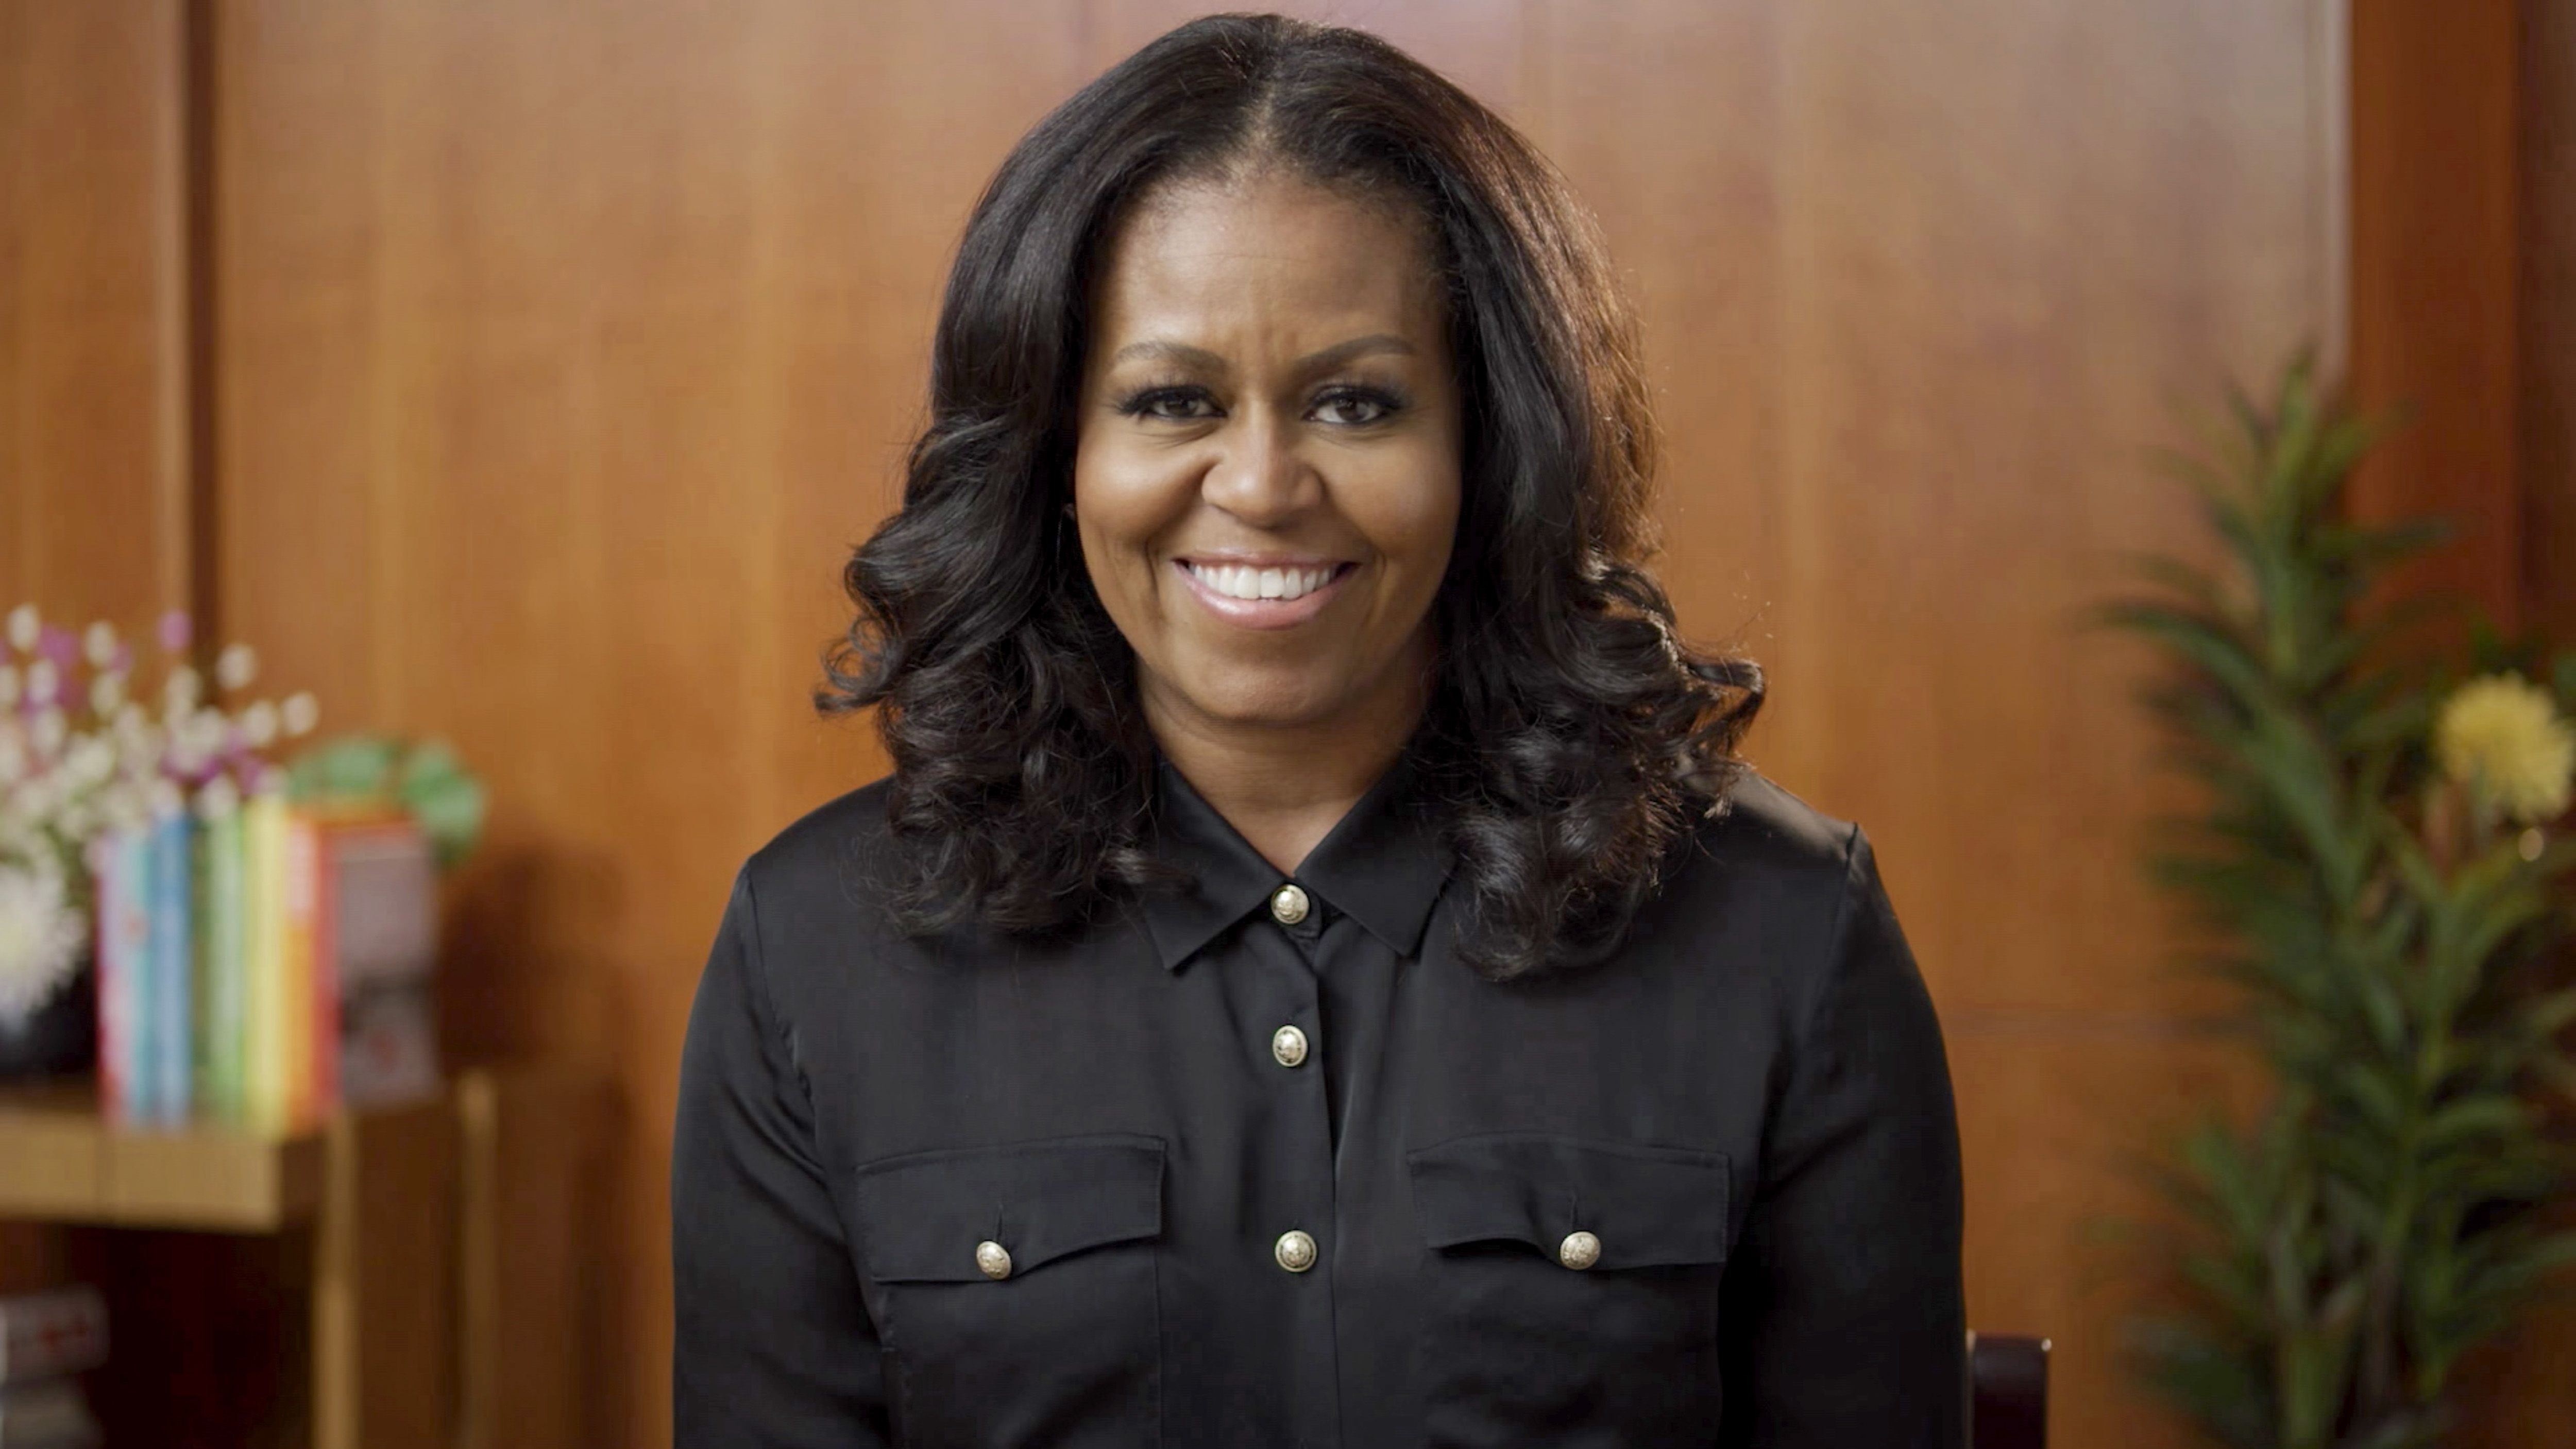 El vídeo viral de Michelle Obama bailando en su cumpleaños